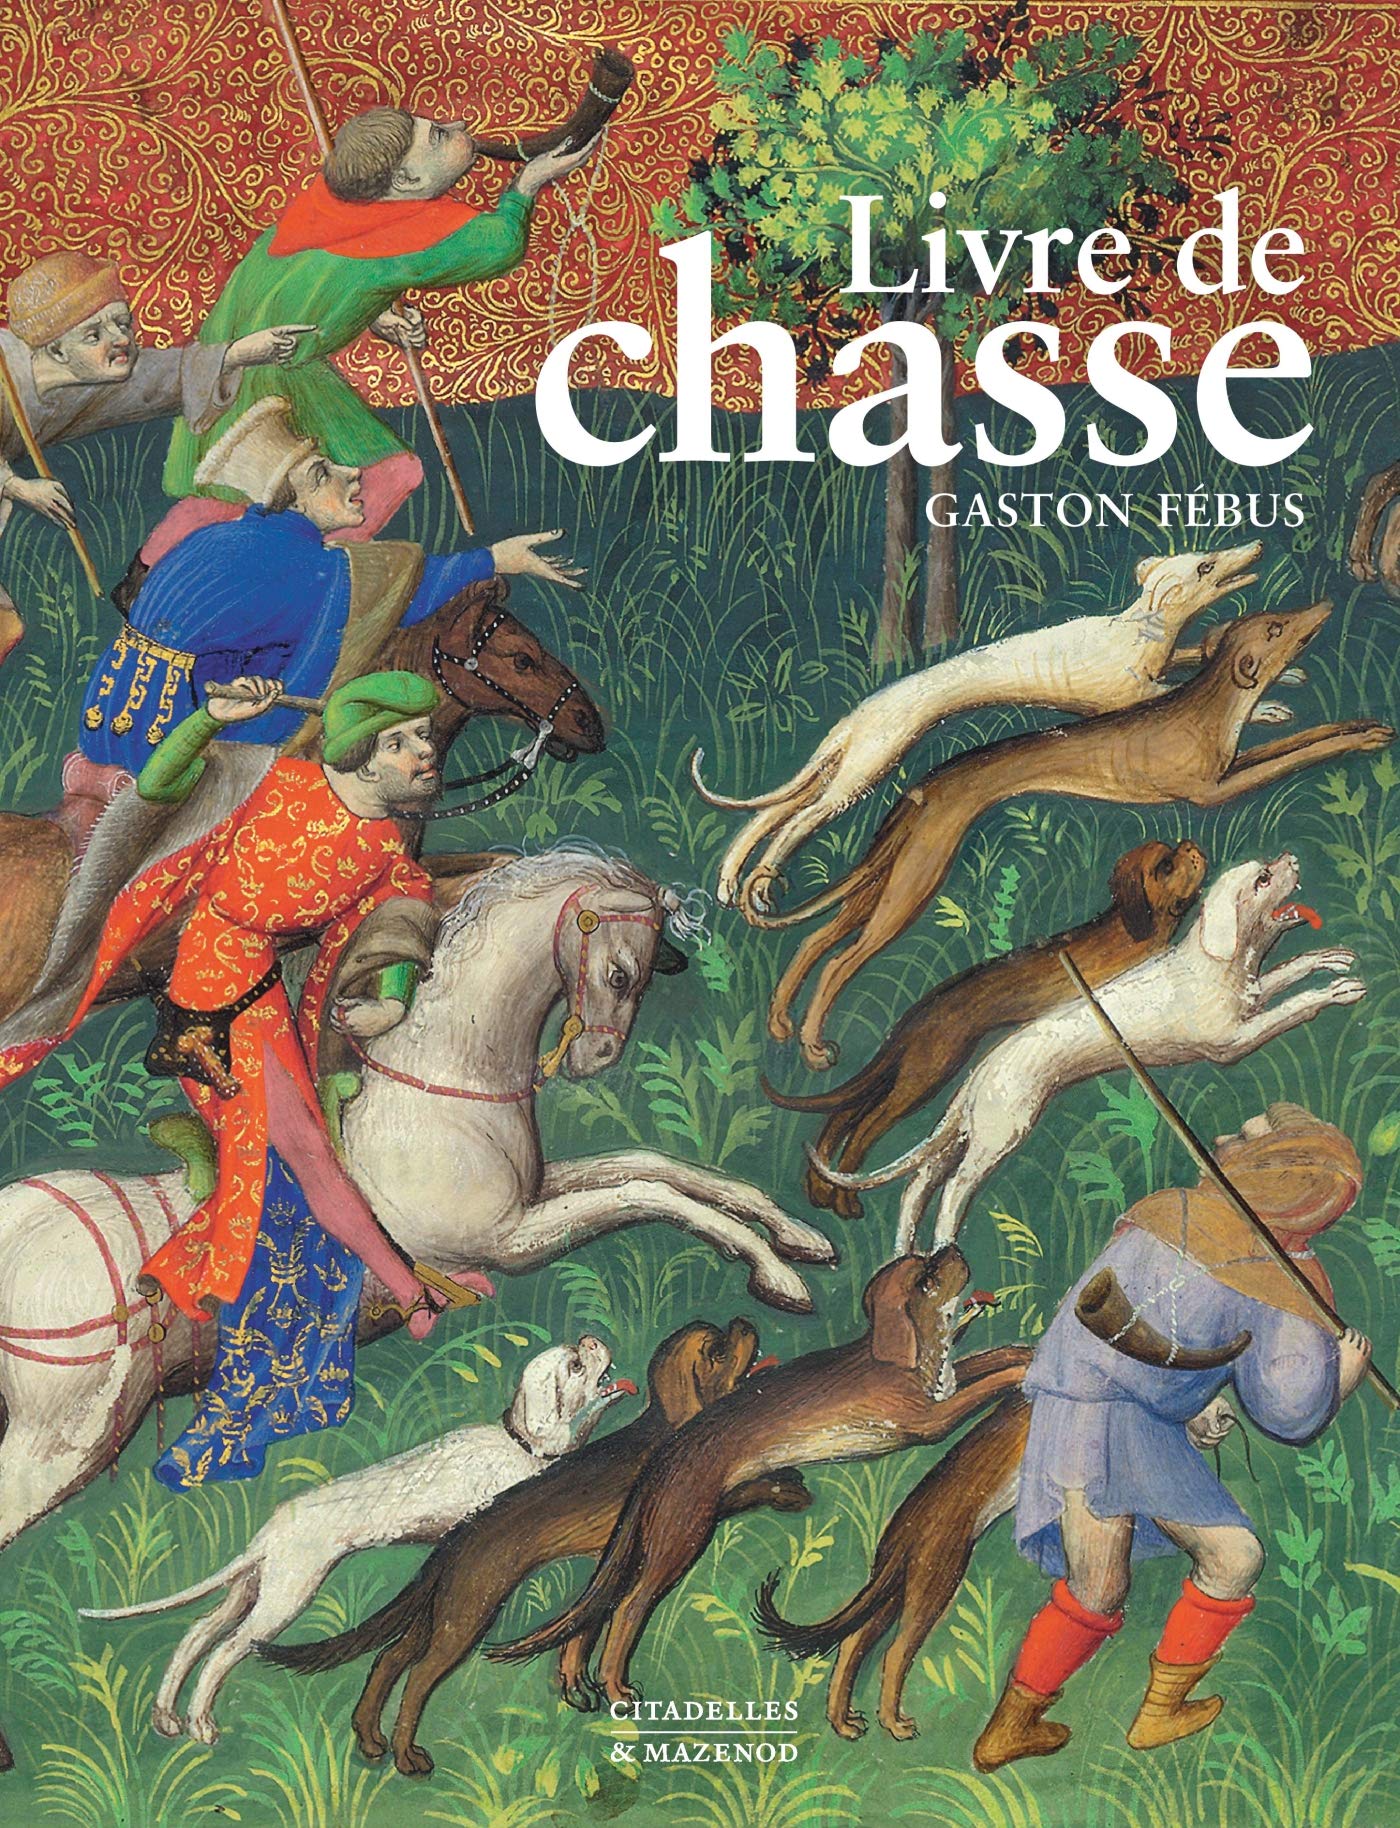 Livre de chasse de Gaston Fébus, 2019, 200 p. par Y. Christe, F